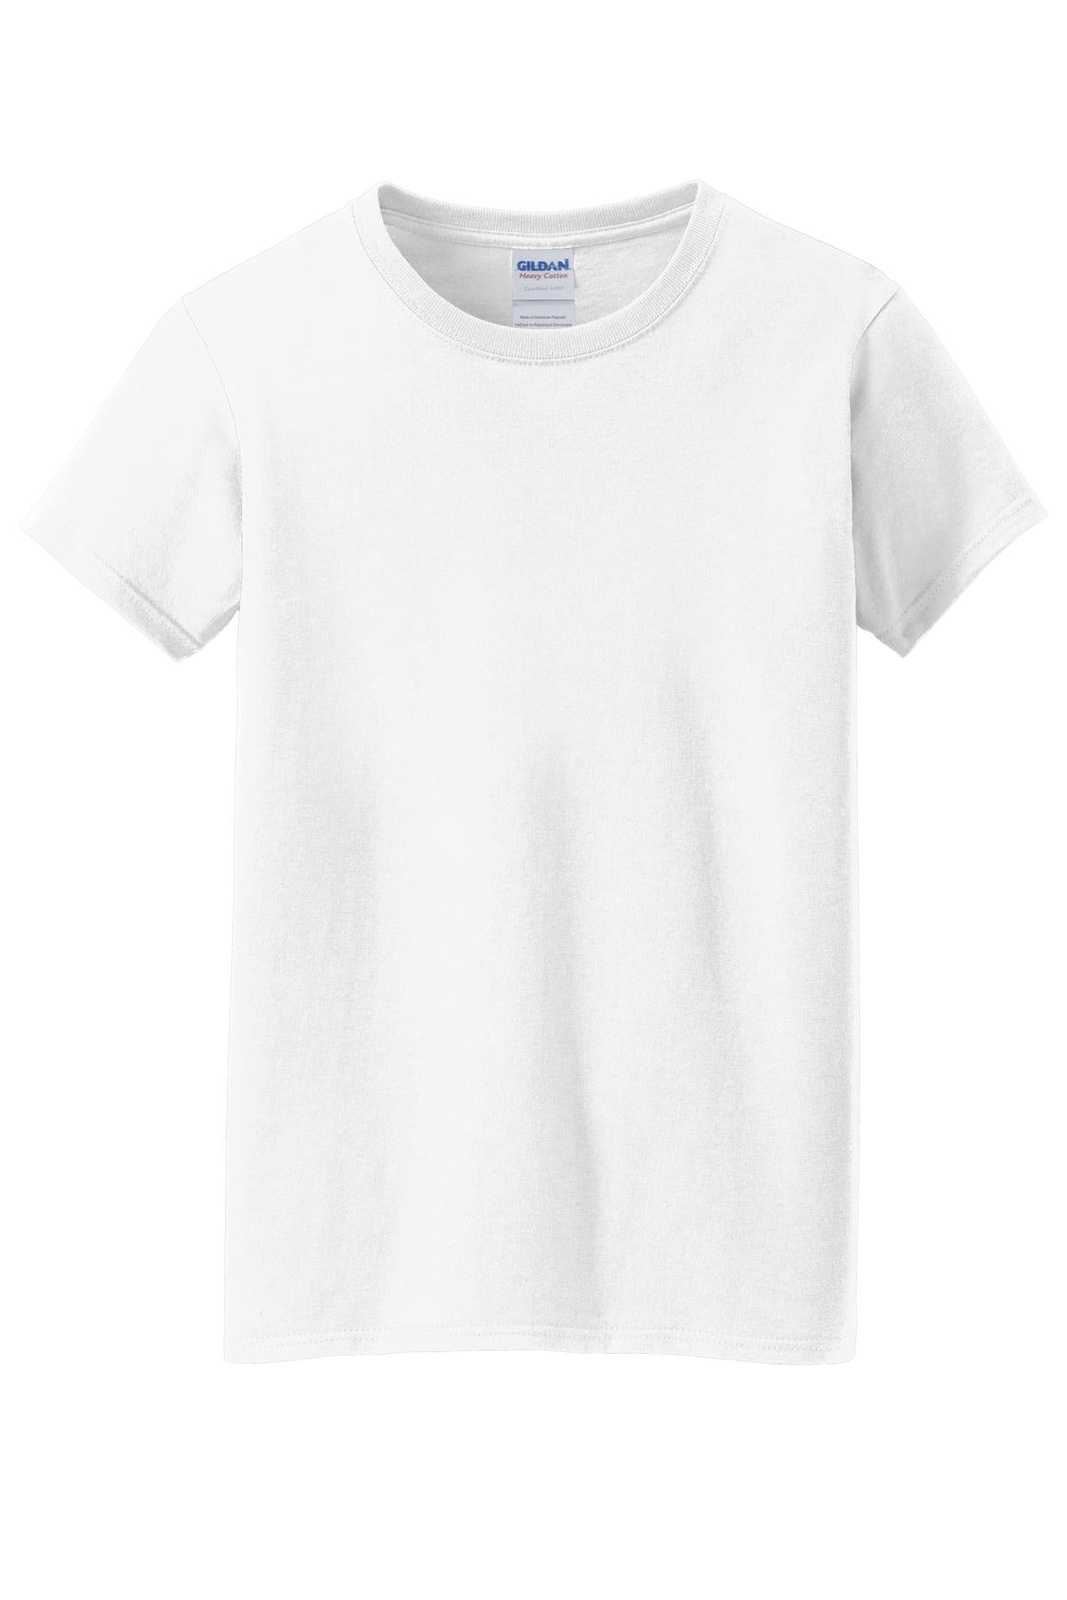 Gildan 5000L Ladies Heavy Cotton 100% Cotton T-Shirt - White - HIT a Double